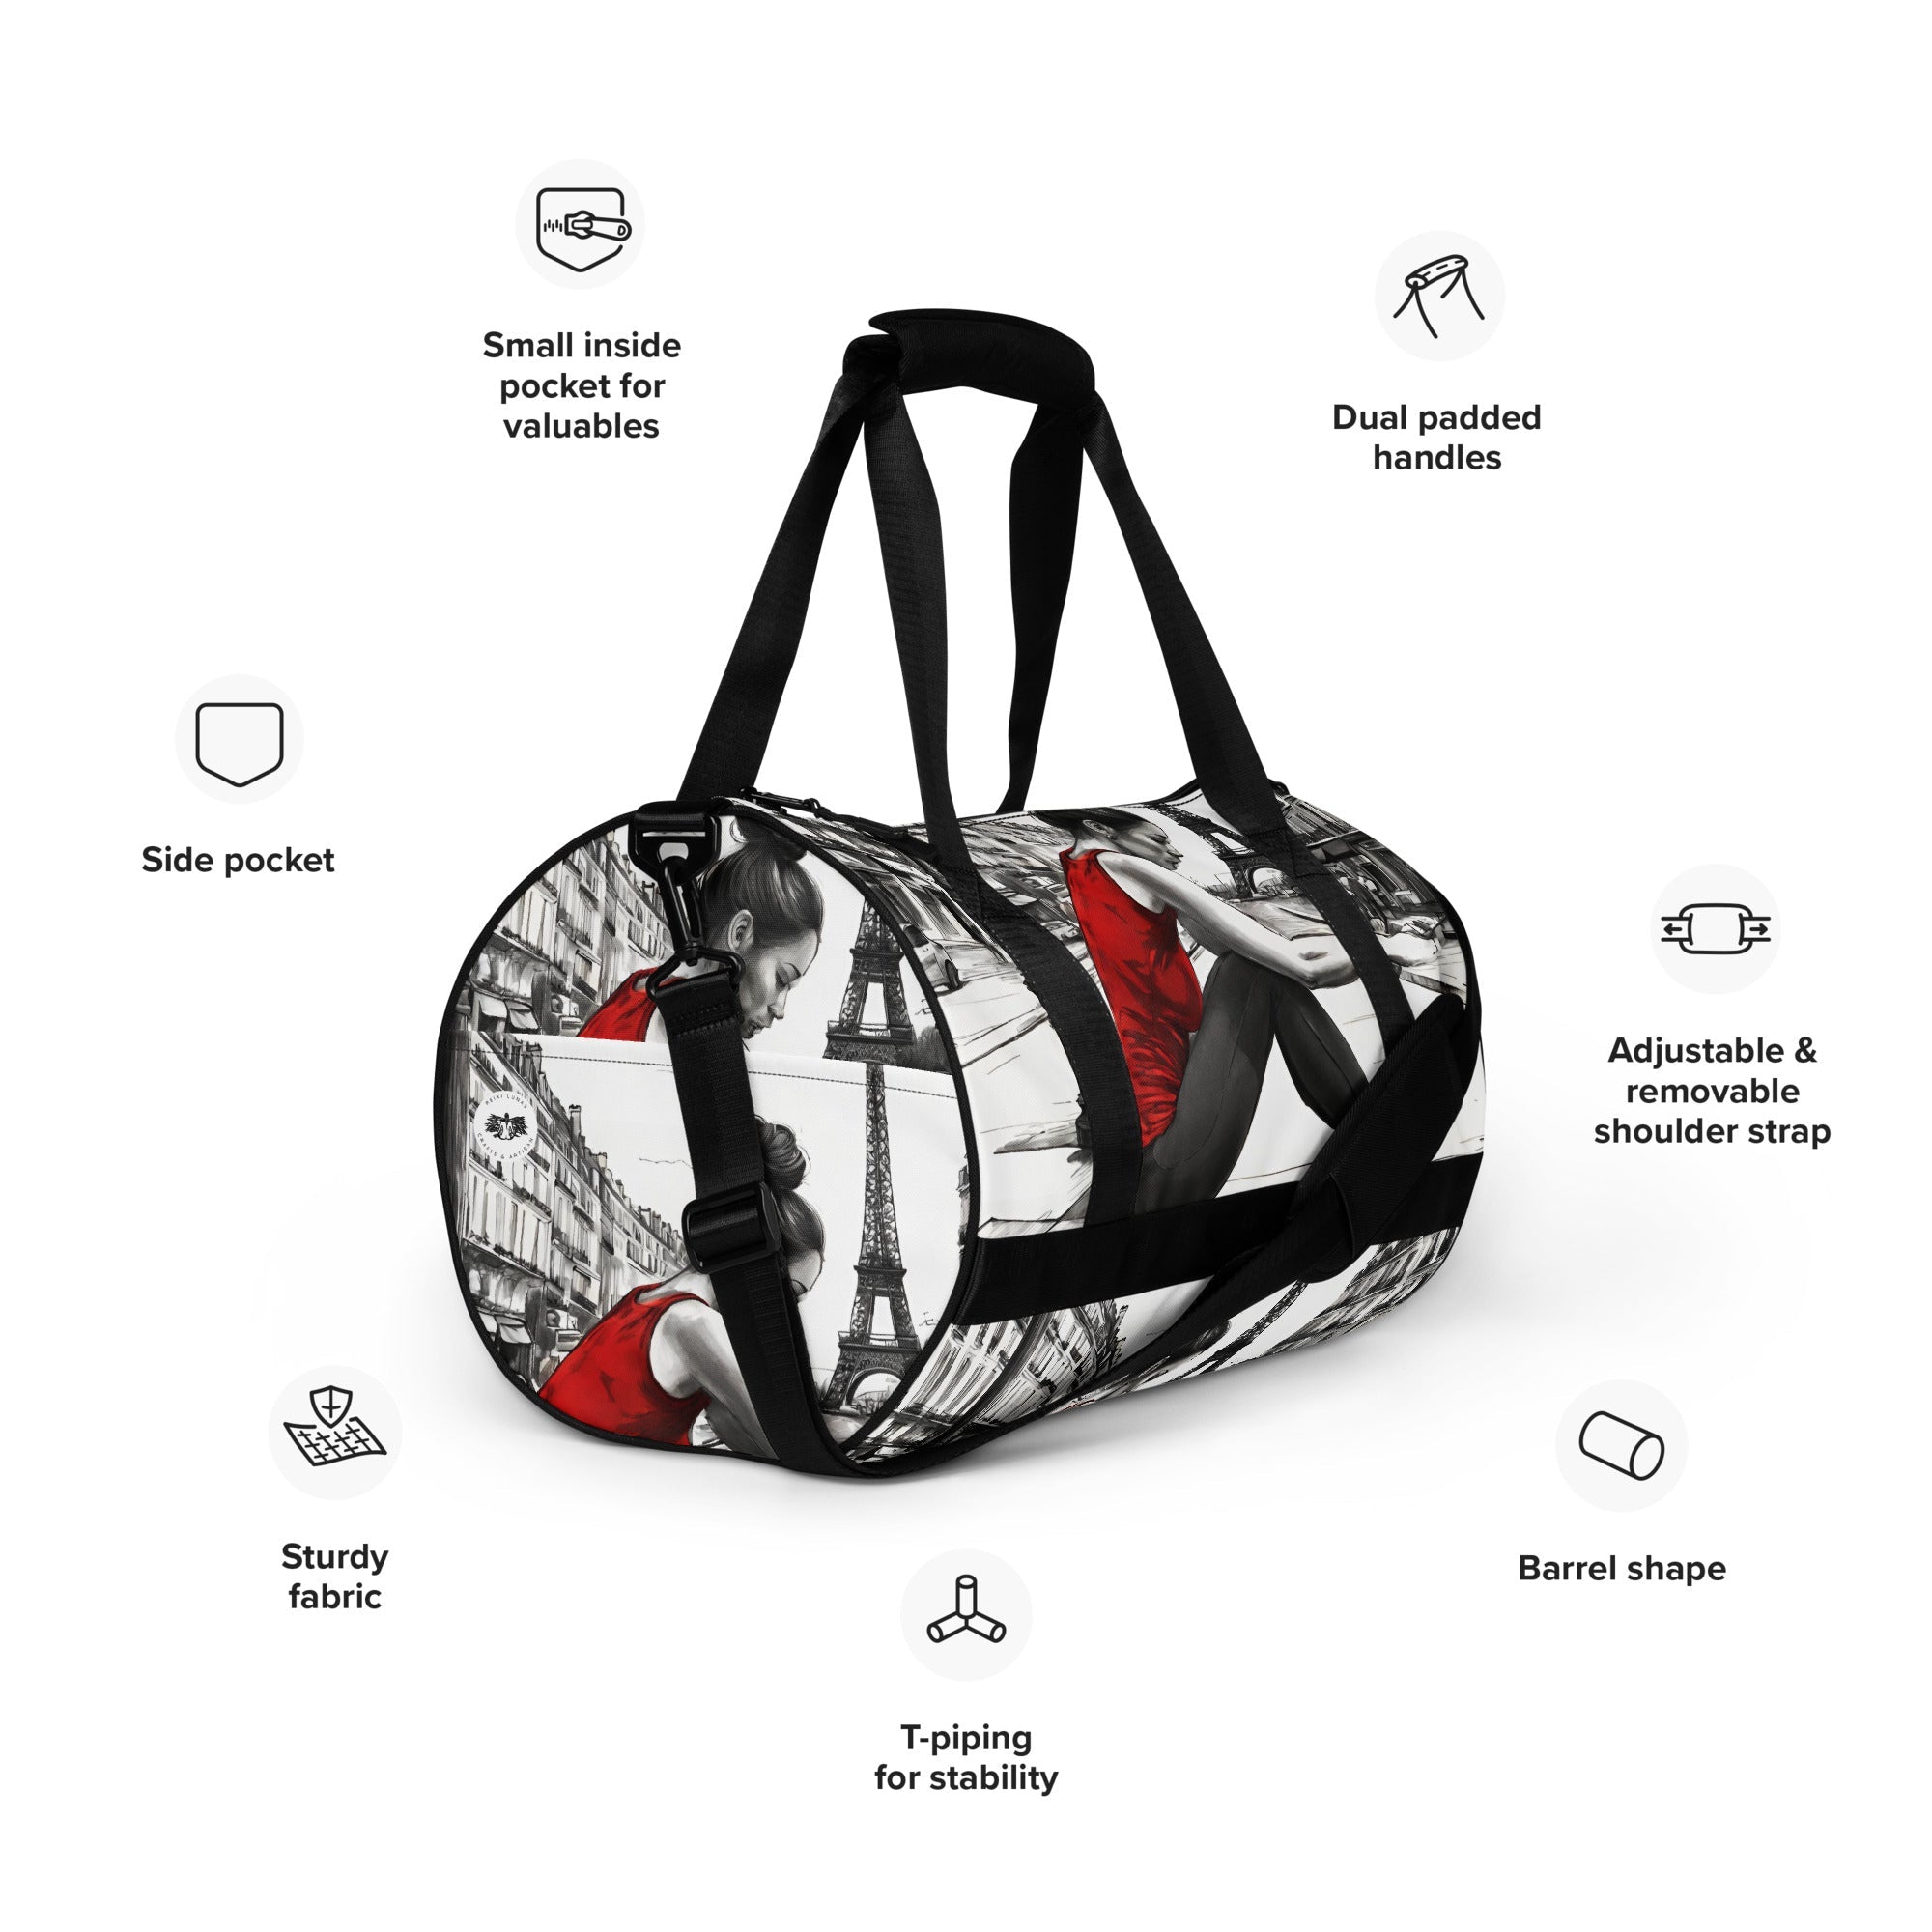 CHI All-over print gym bag - REIKI LUNAS, CRAFTS & ARTISAN